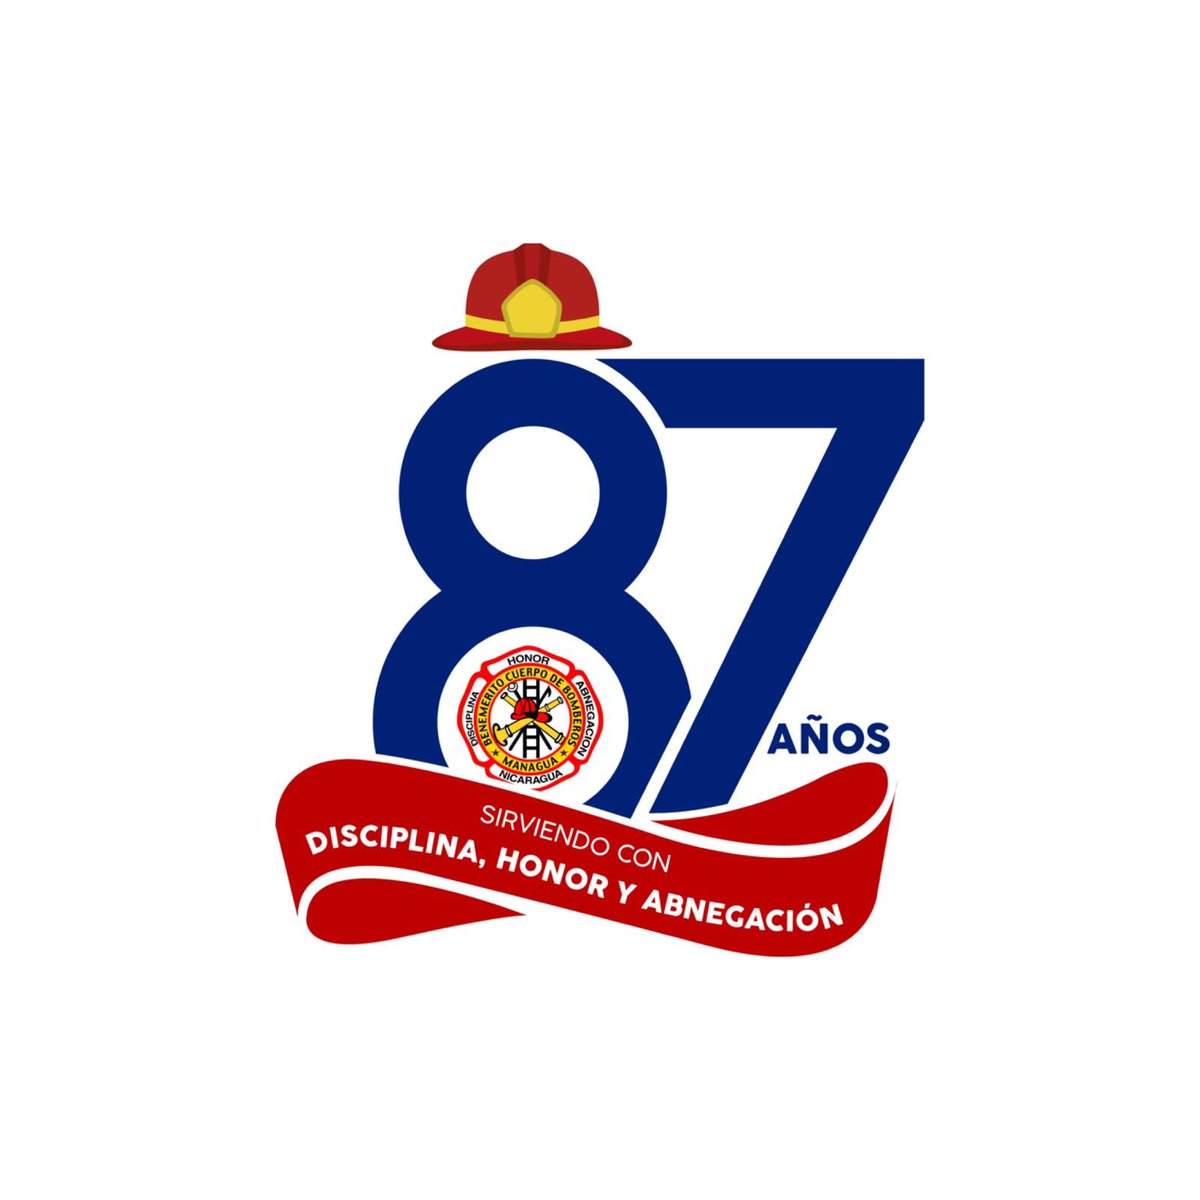 Felicidades a todos mis hermanos y hermanas del Benemérito Cuerpo de Bomberos de Managua. Nuestro reconocimiento a los q en estos años ofrendaron sus vidas para salvar otras. Casi un siglo sirviendo con sus Bomberos Voluntarios a los Nicaragüenses. Disciplina- Honor - Abnegación.